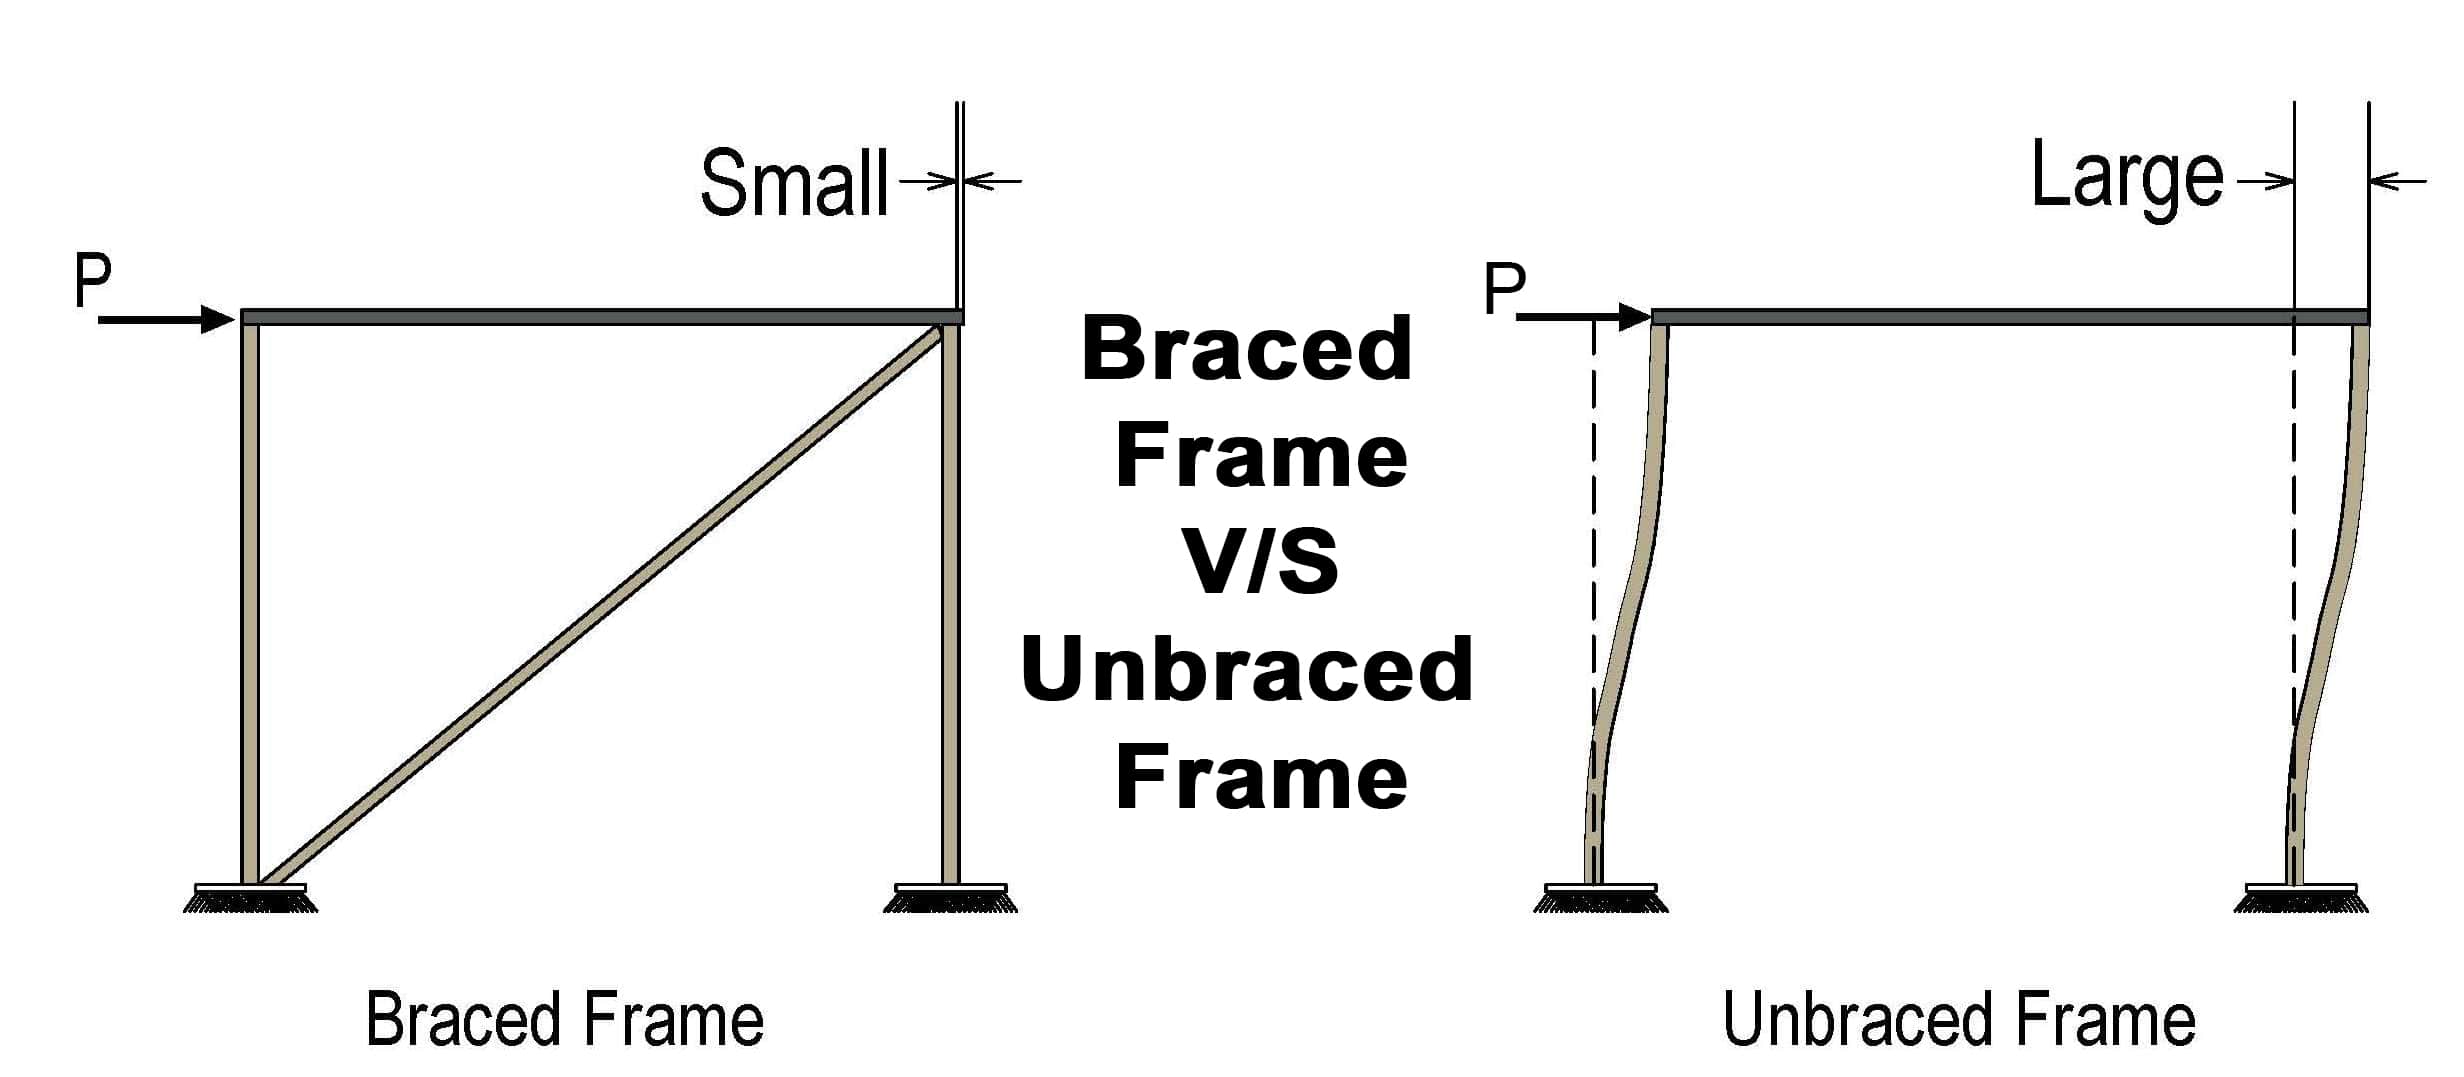 Braced-Frame-Unbraced-Frame - image